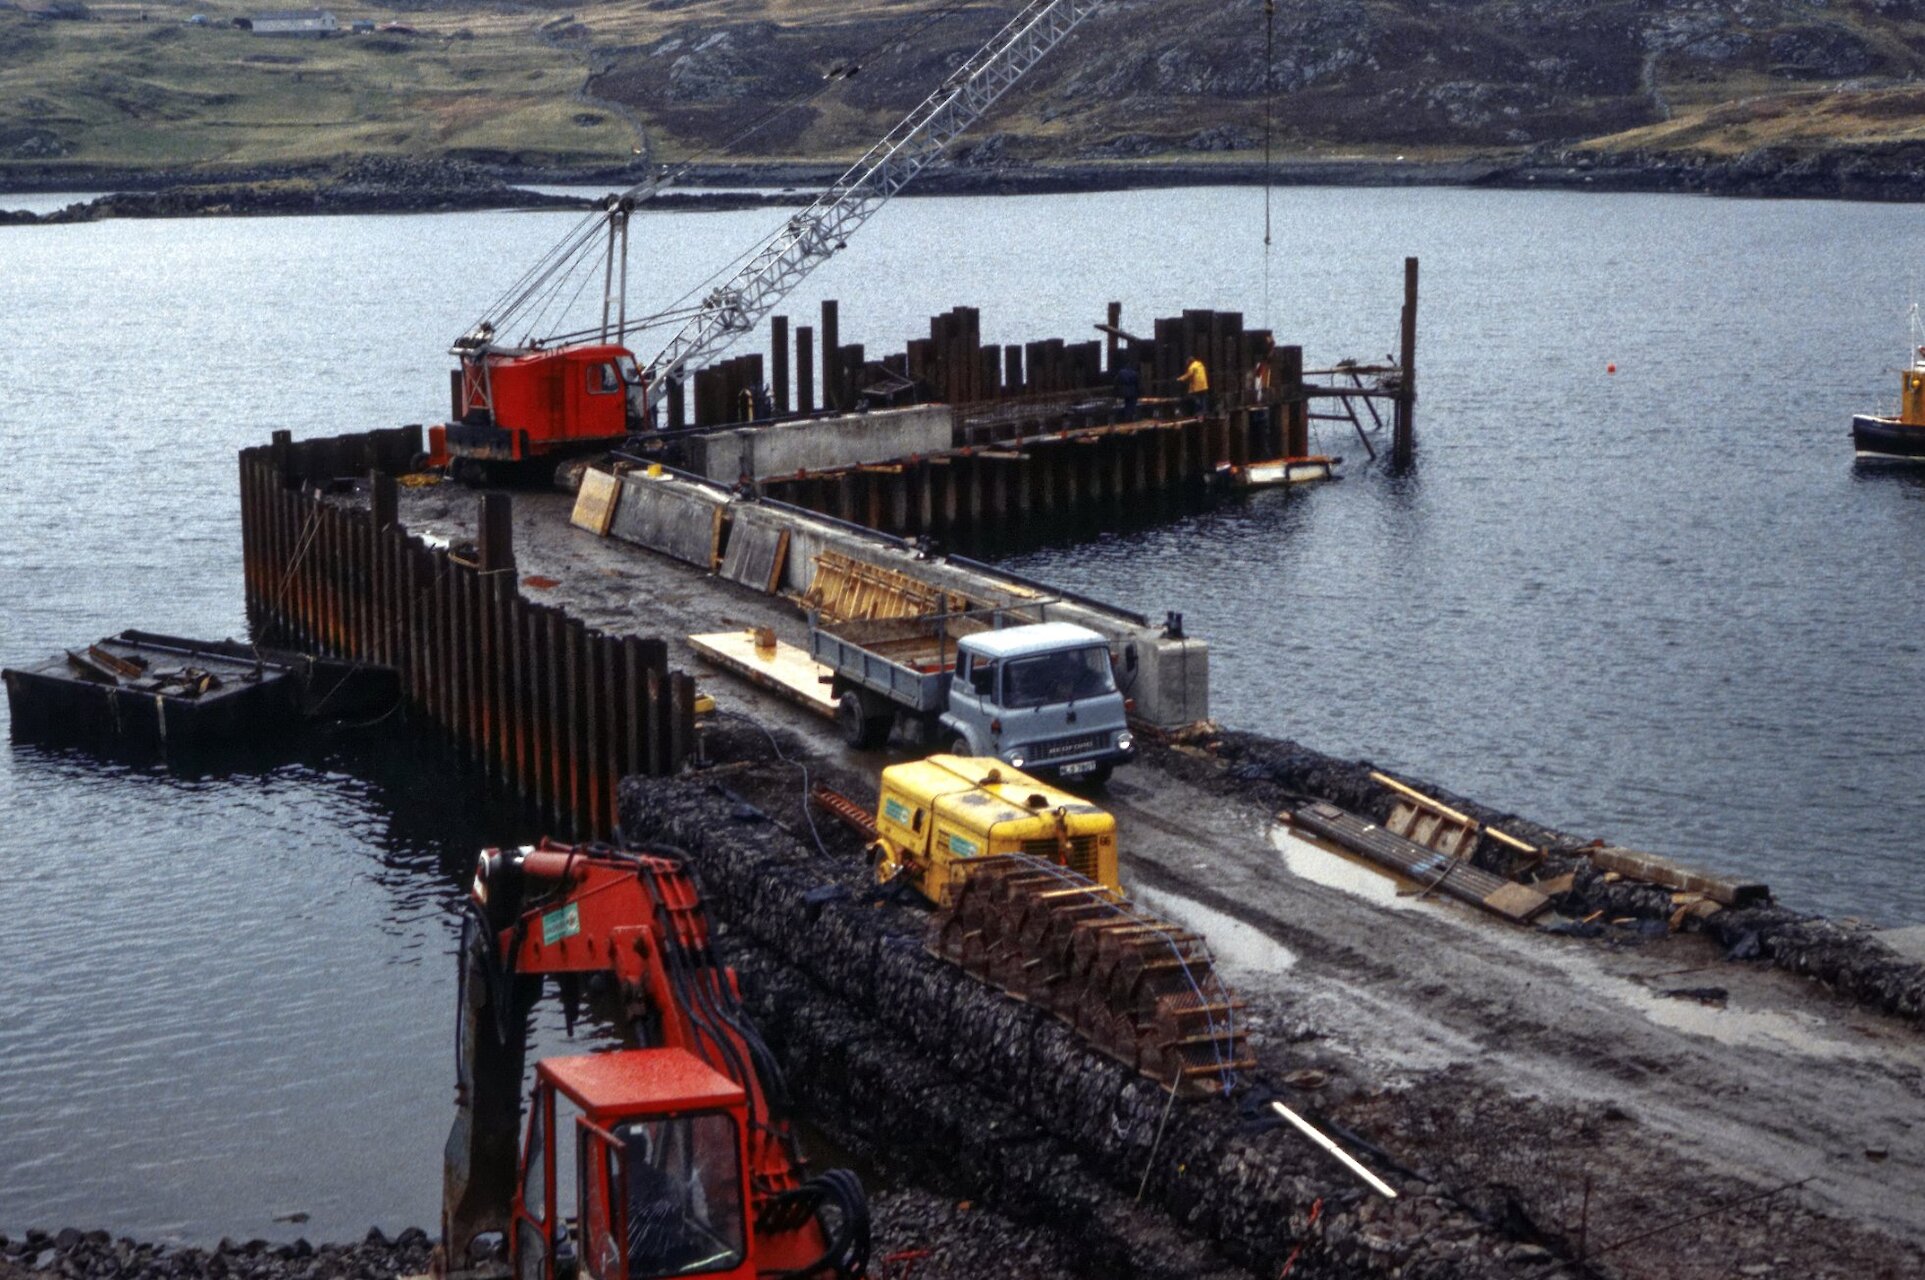 West Burrafirth Pier, Shetland, 1985